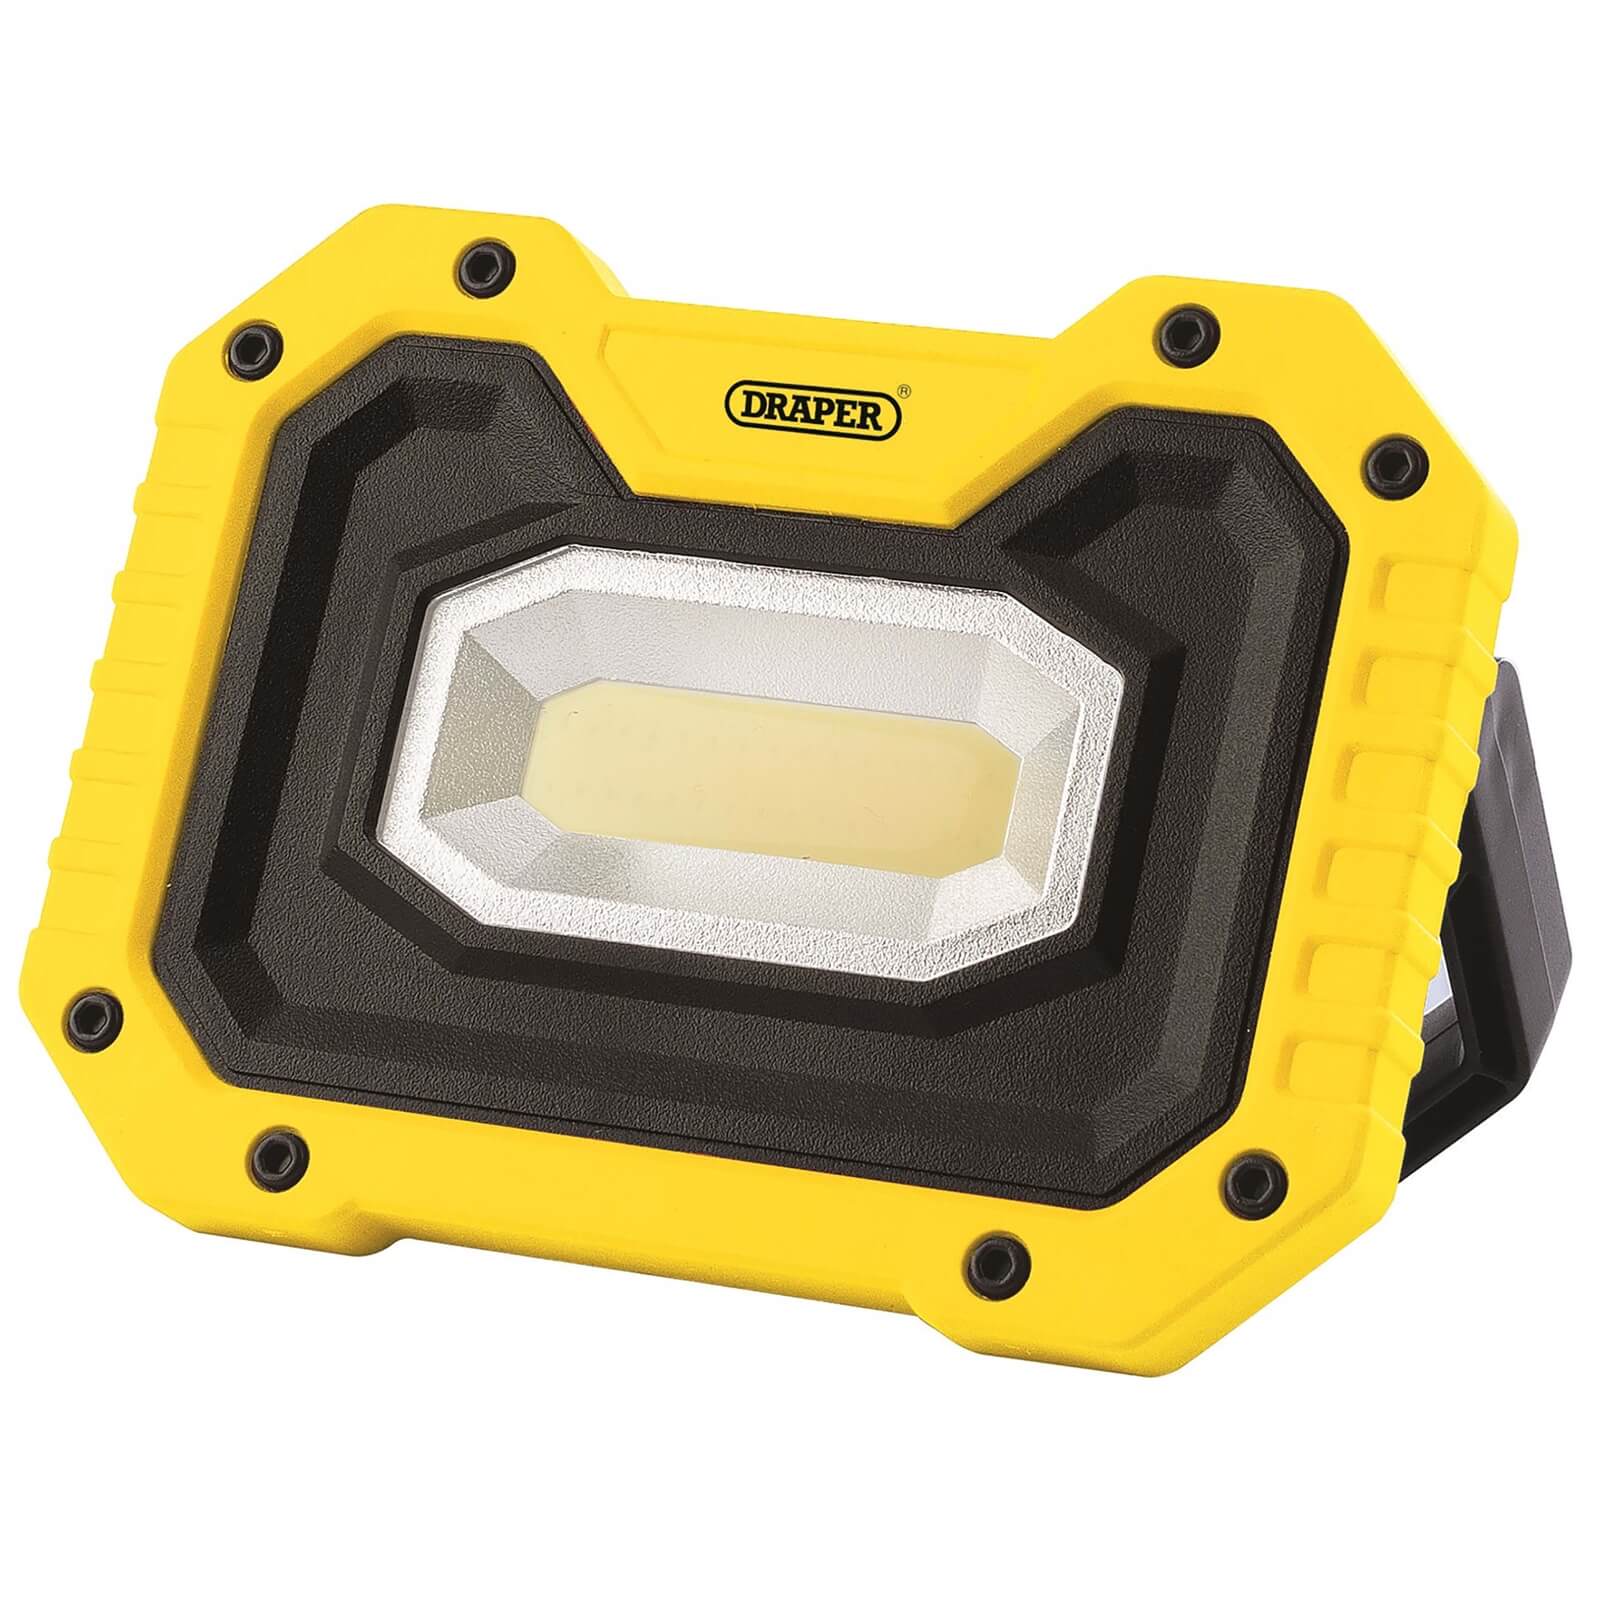 Draper 5W COB LED Worklight (4 x AA batteries supplied) 500 lumens